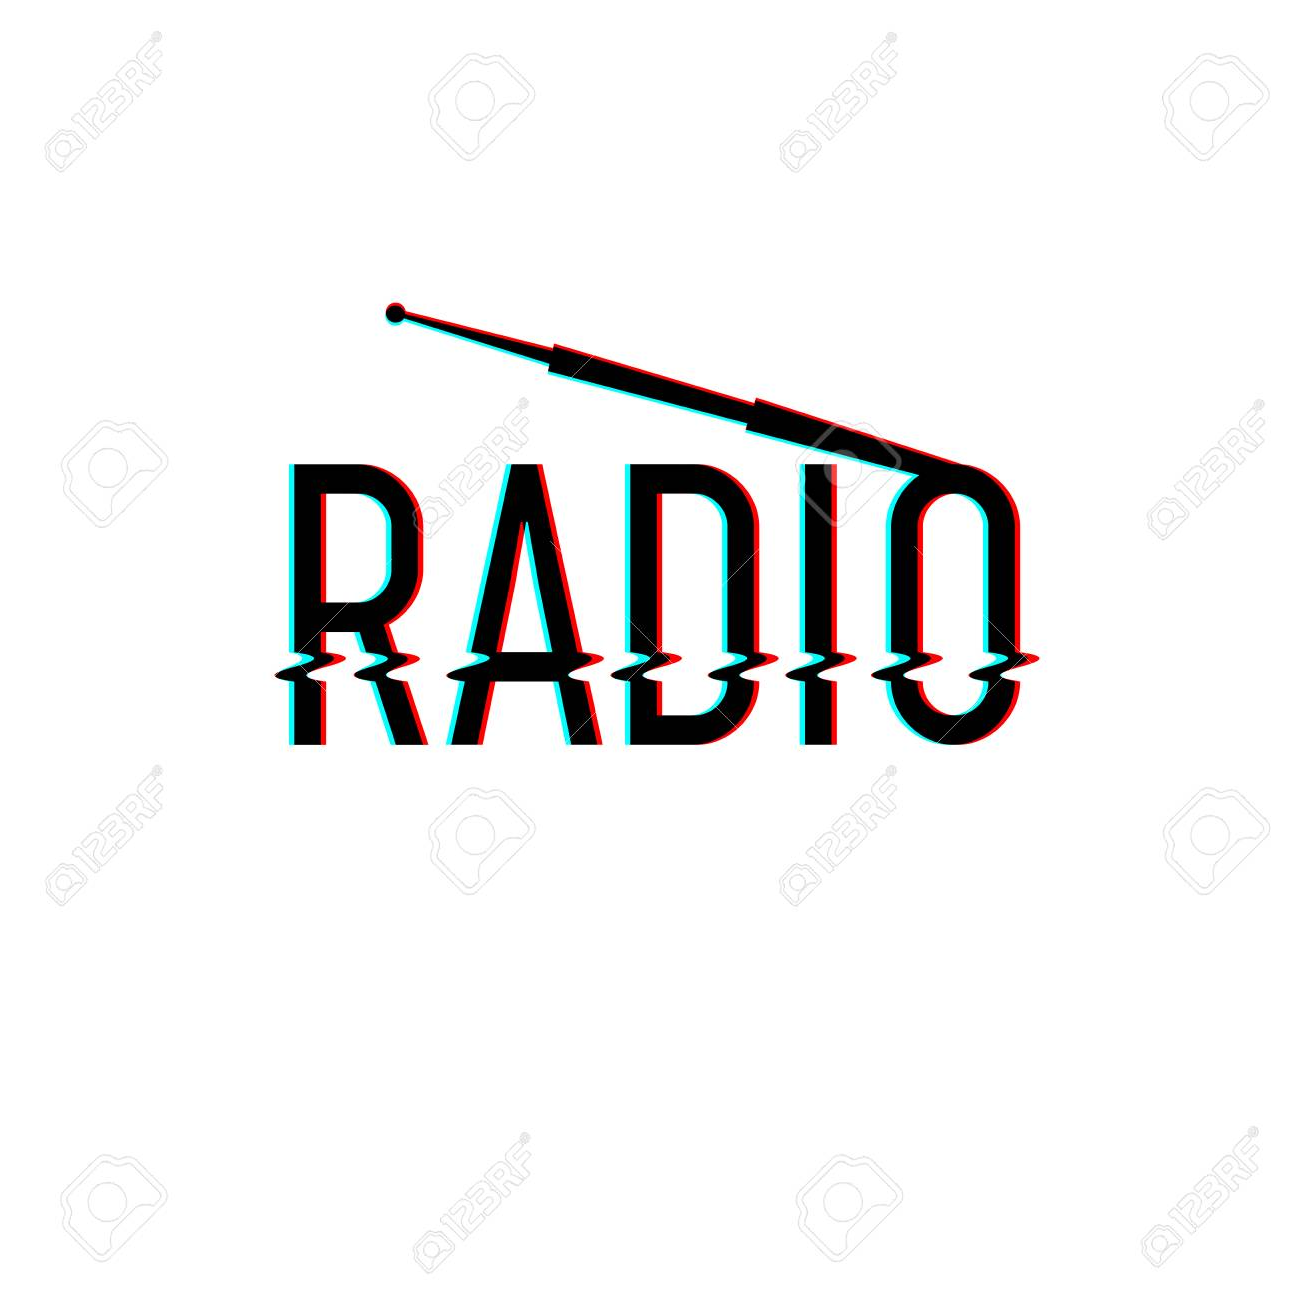 Radio Bum !!